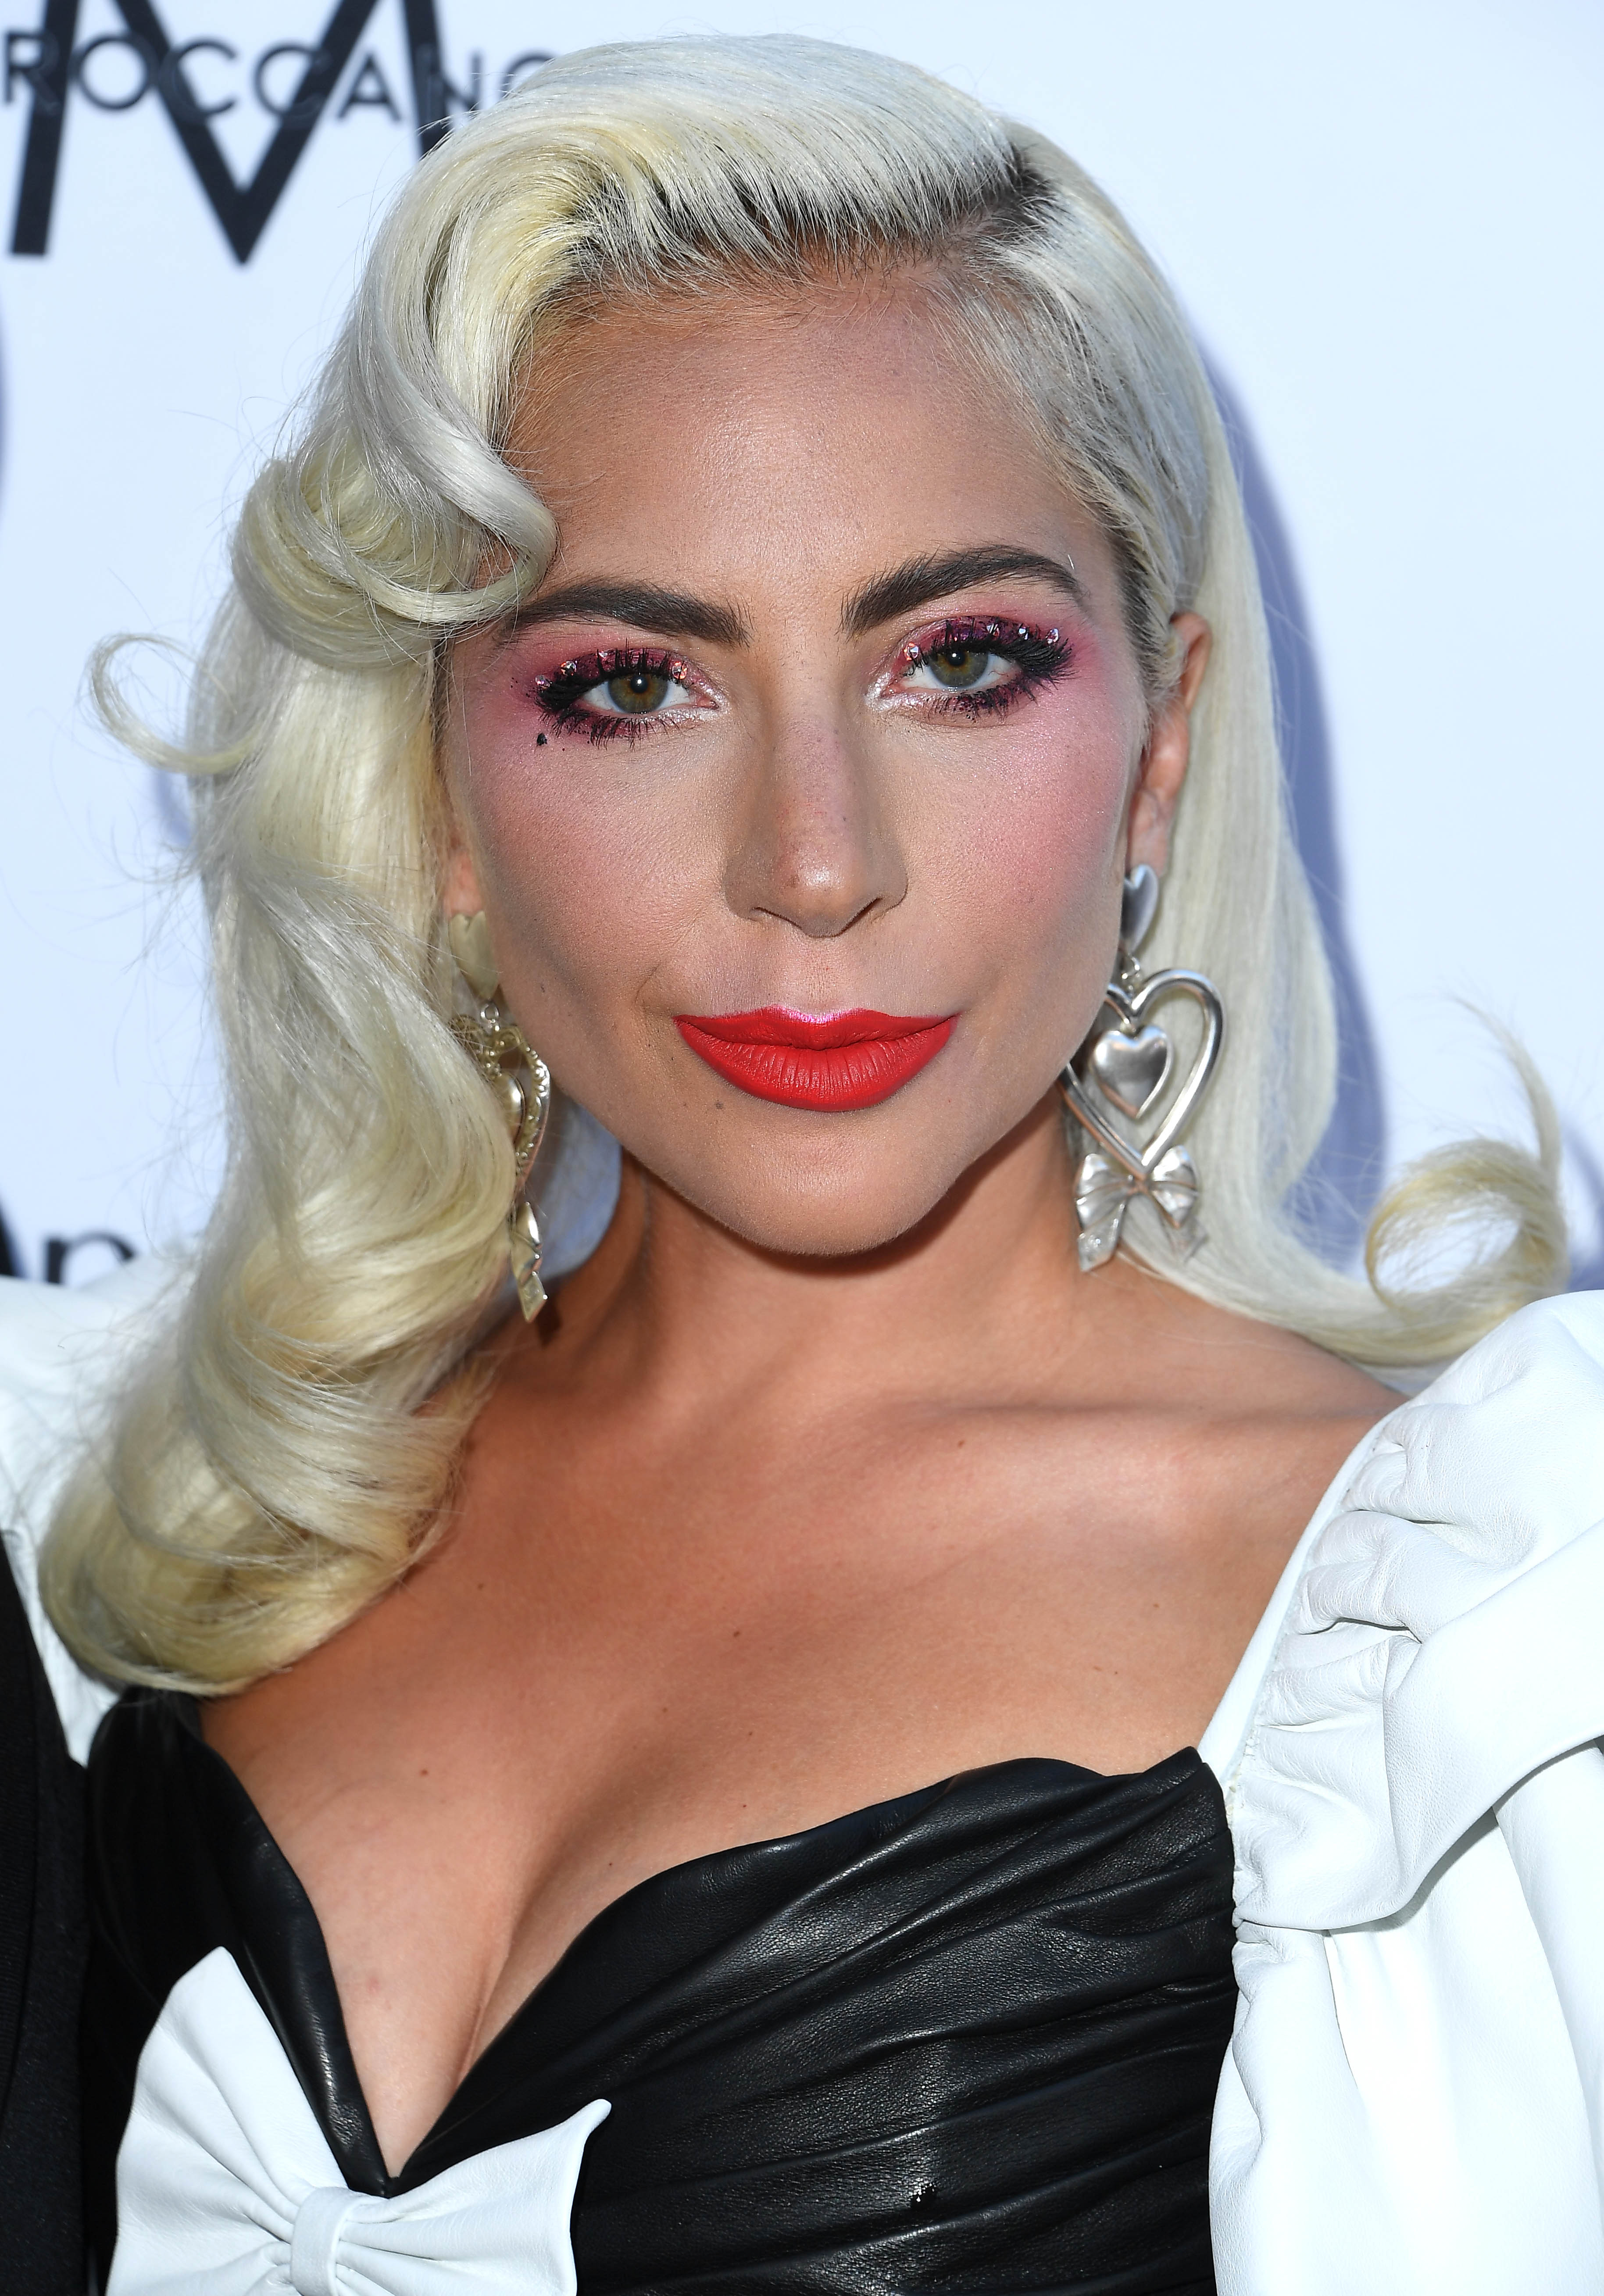 Ezért vette fel a Lady Gaga művésznevet Stefani Germanotta - Blikk